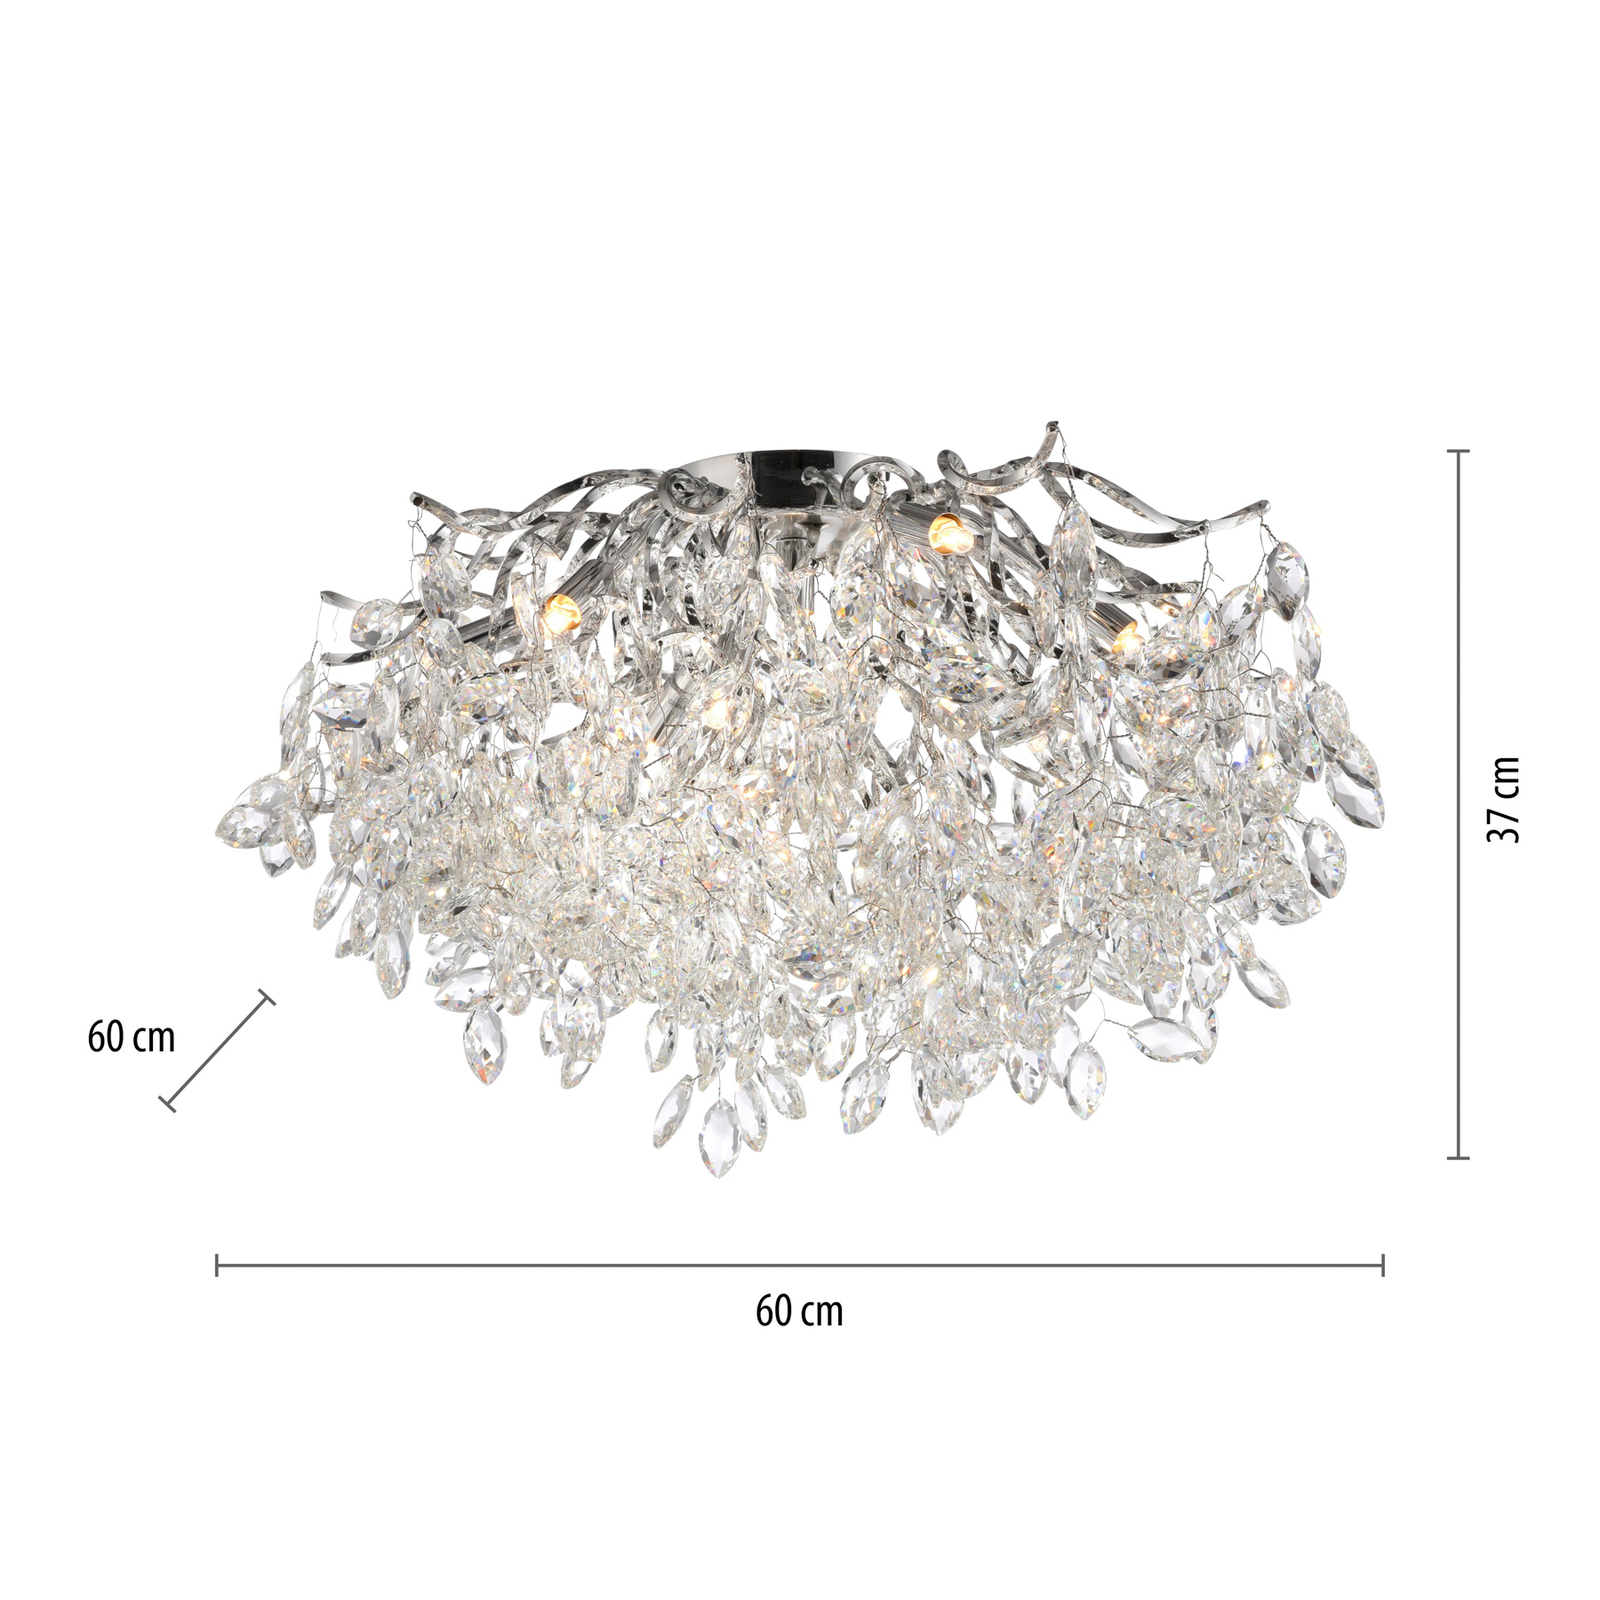 Paul Neuhaus Ricicle taklampe, krystallpendel, Ø 60 cm